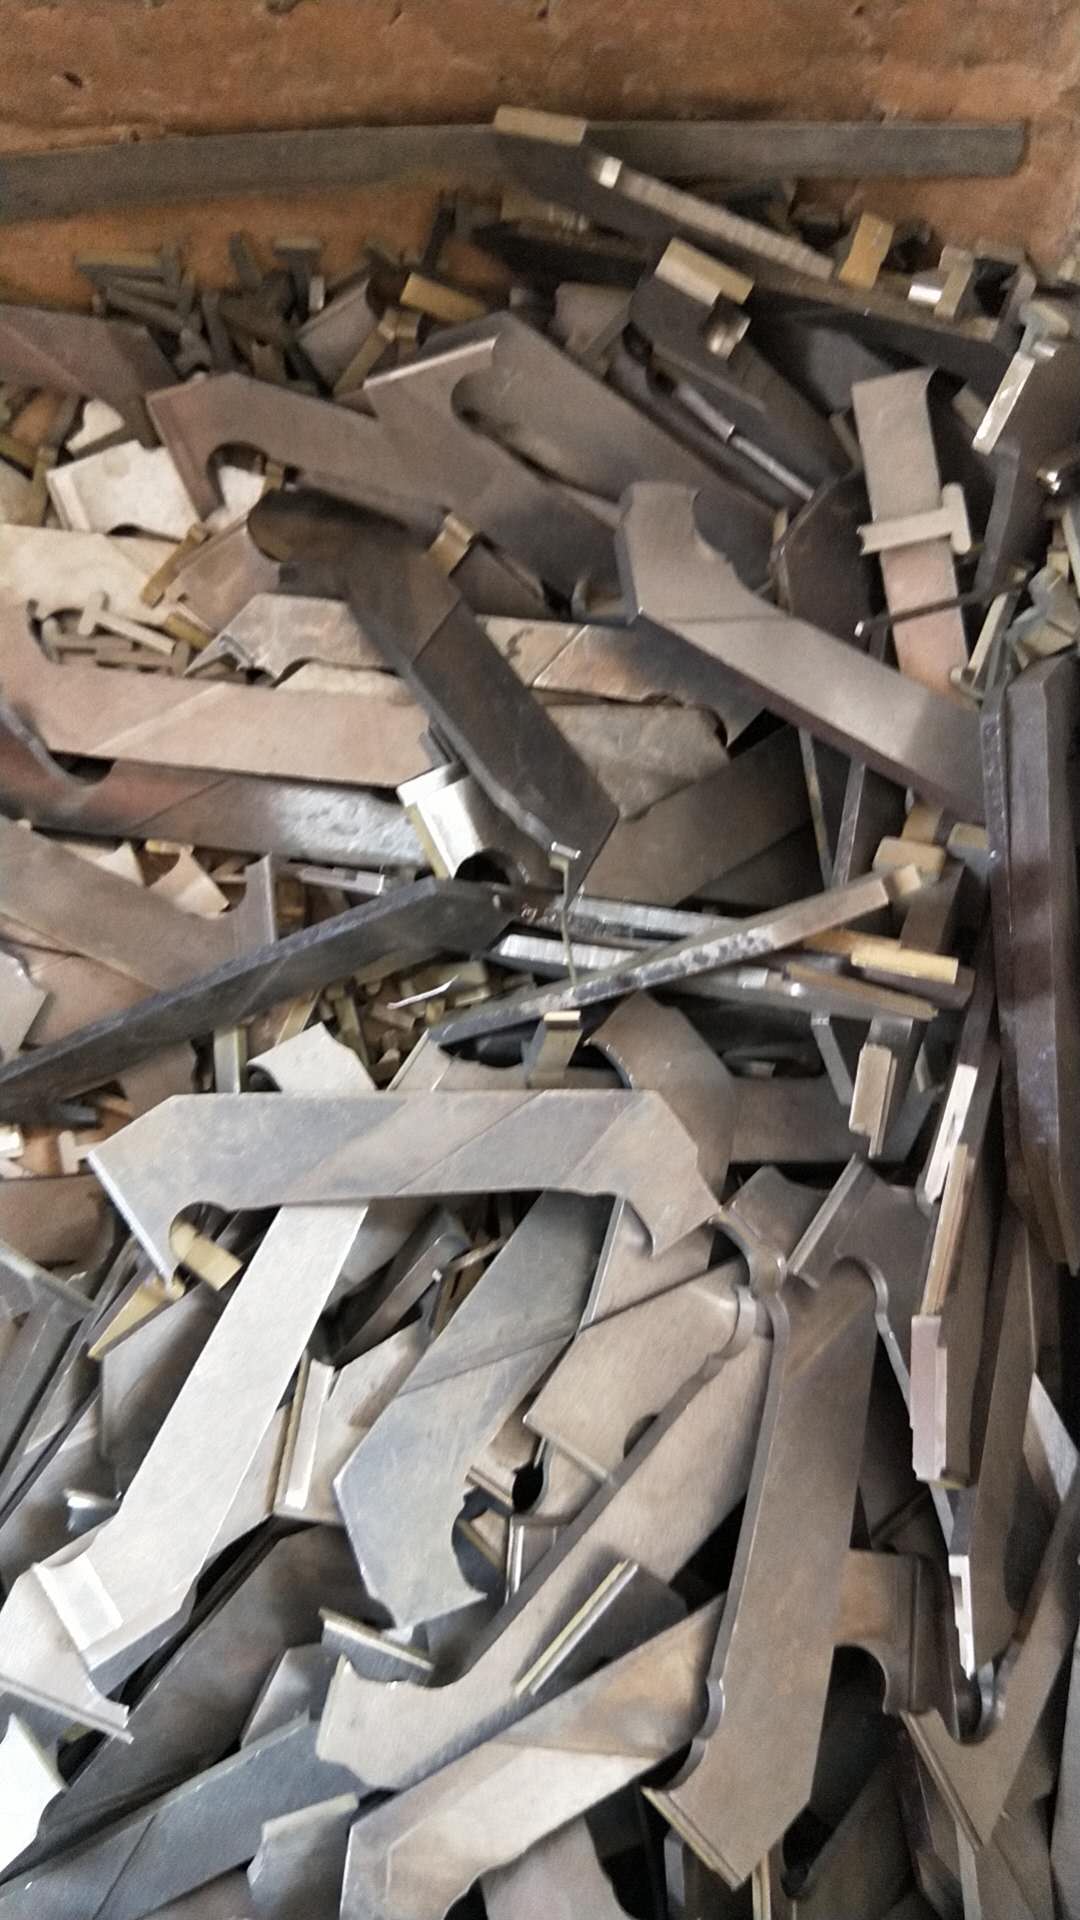 佛山回收钛多少钱一斤